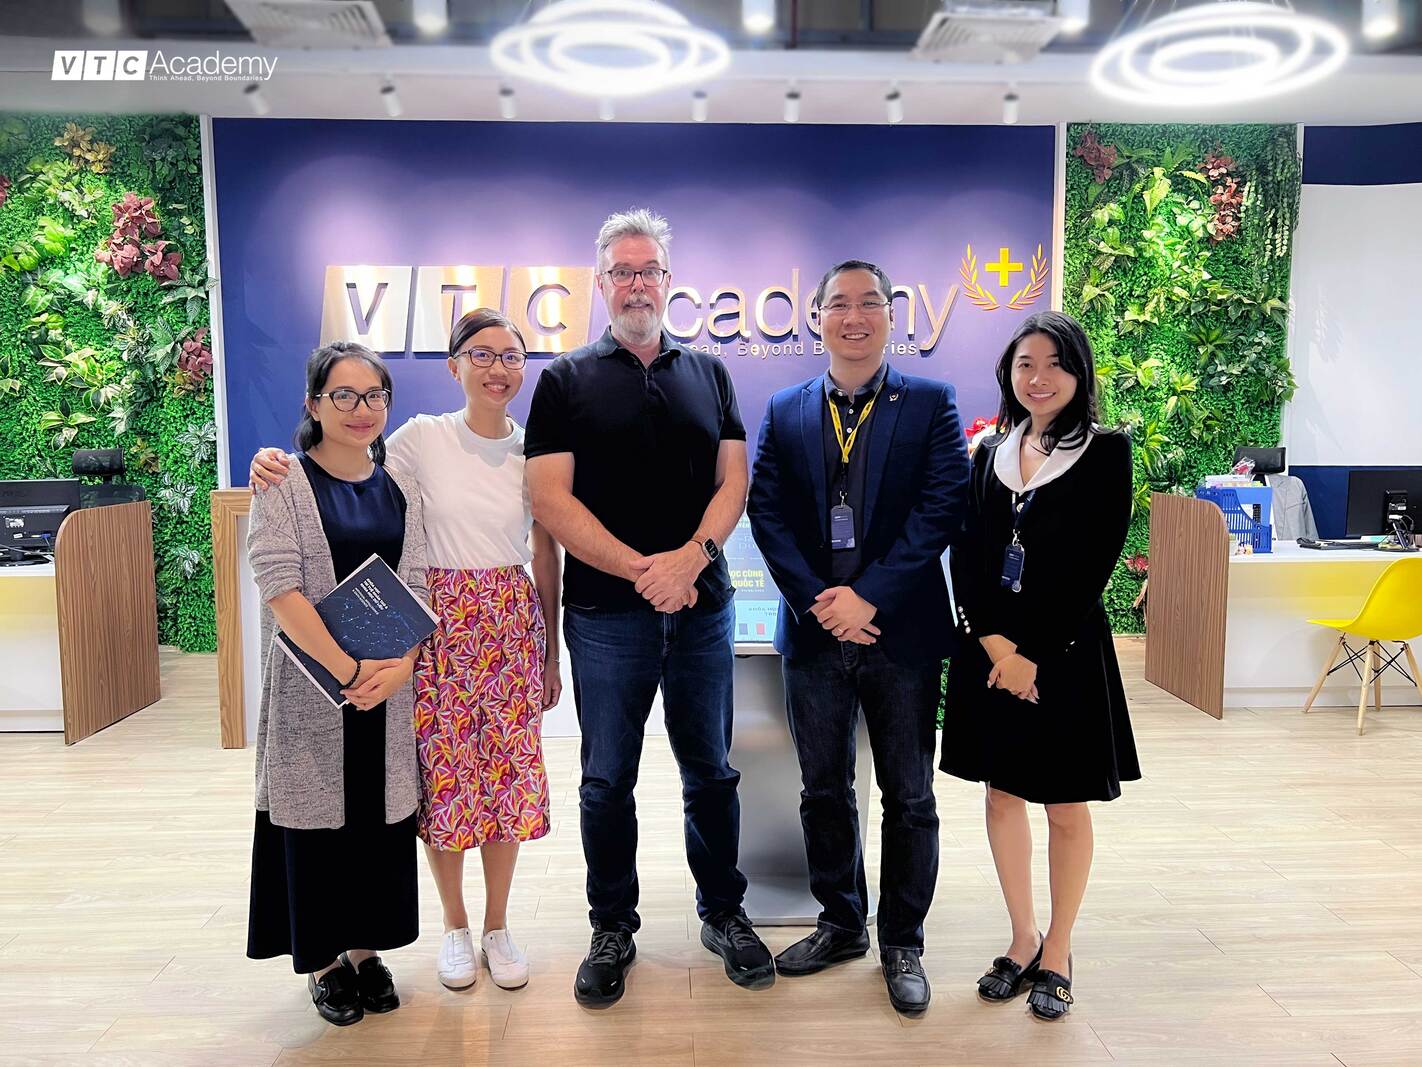 VTC アカデミーは、Apple Education (シンガポール) の代表団の訪問を歓迎し、トレーニング分野での緊密な協力を交換できることを光栄に思います。